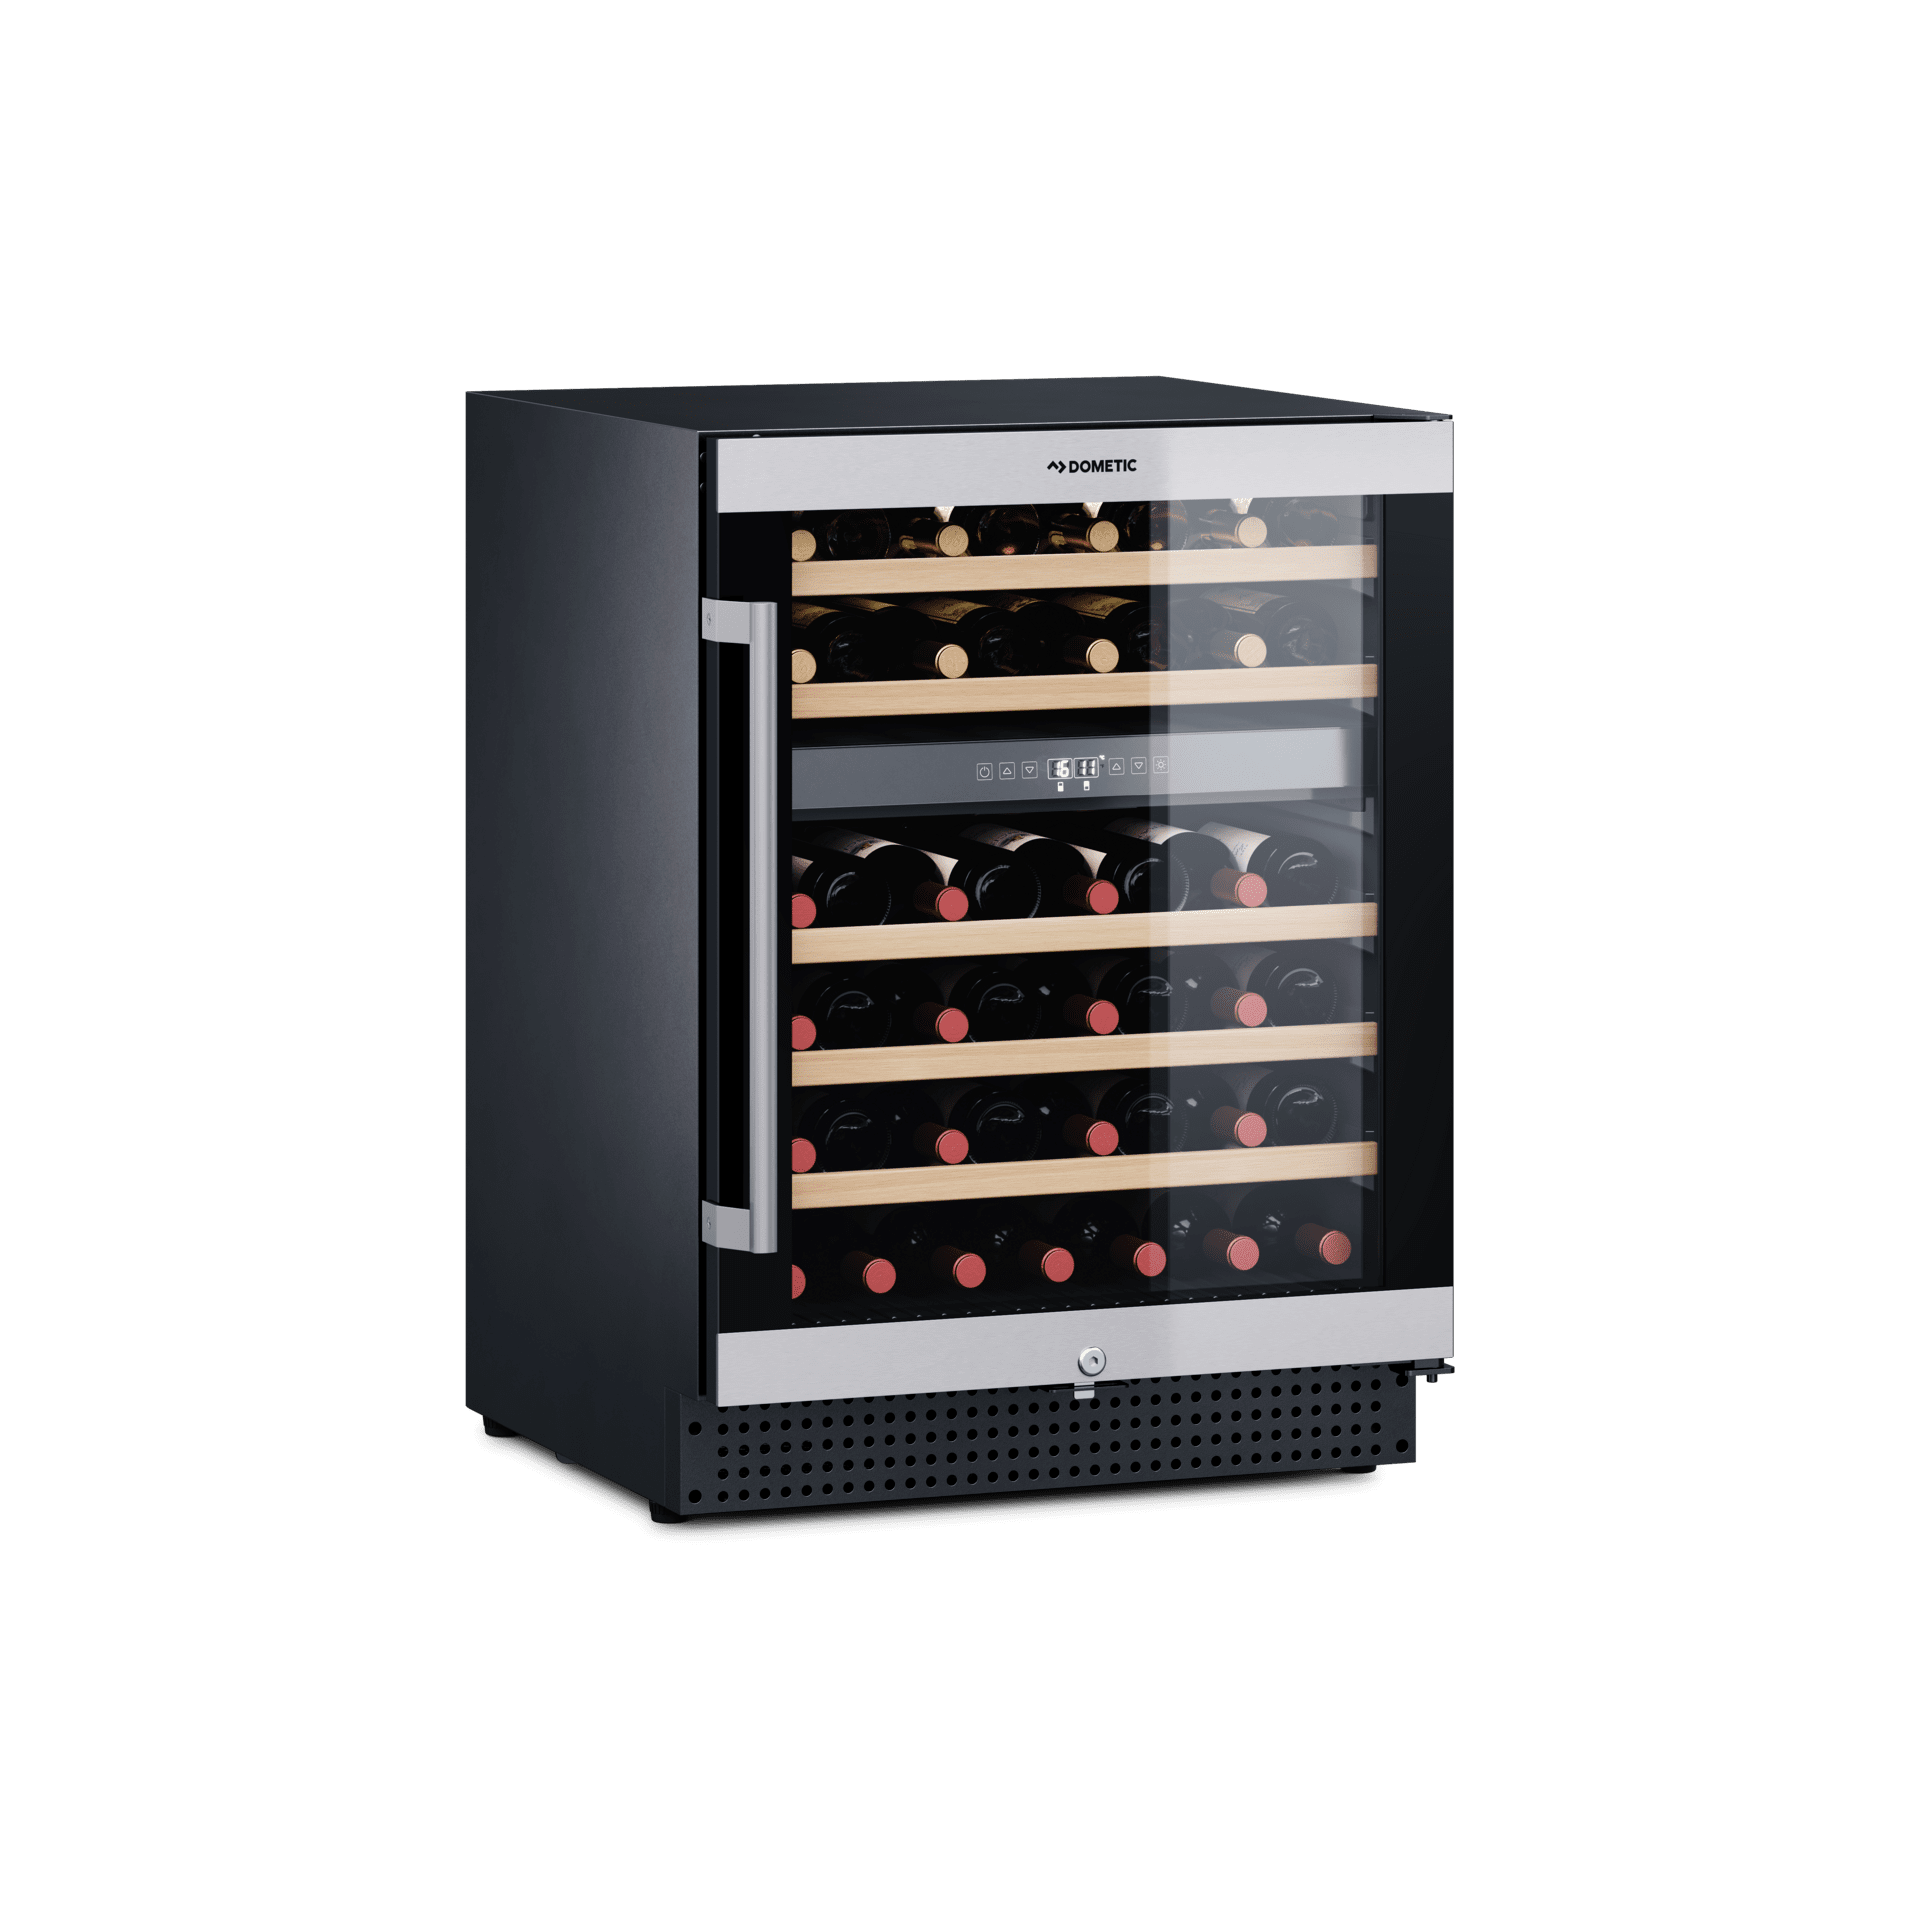 Edelstahl-UV-Glastür 2 Zonen Wein-Kühlschrank für 46 Flaschen Wein-Klimaschrank Dometic MaCave D50 Weintemperierschrank +5 °C bis +22 °C 